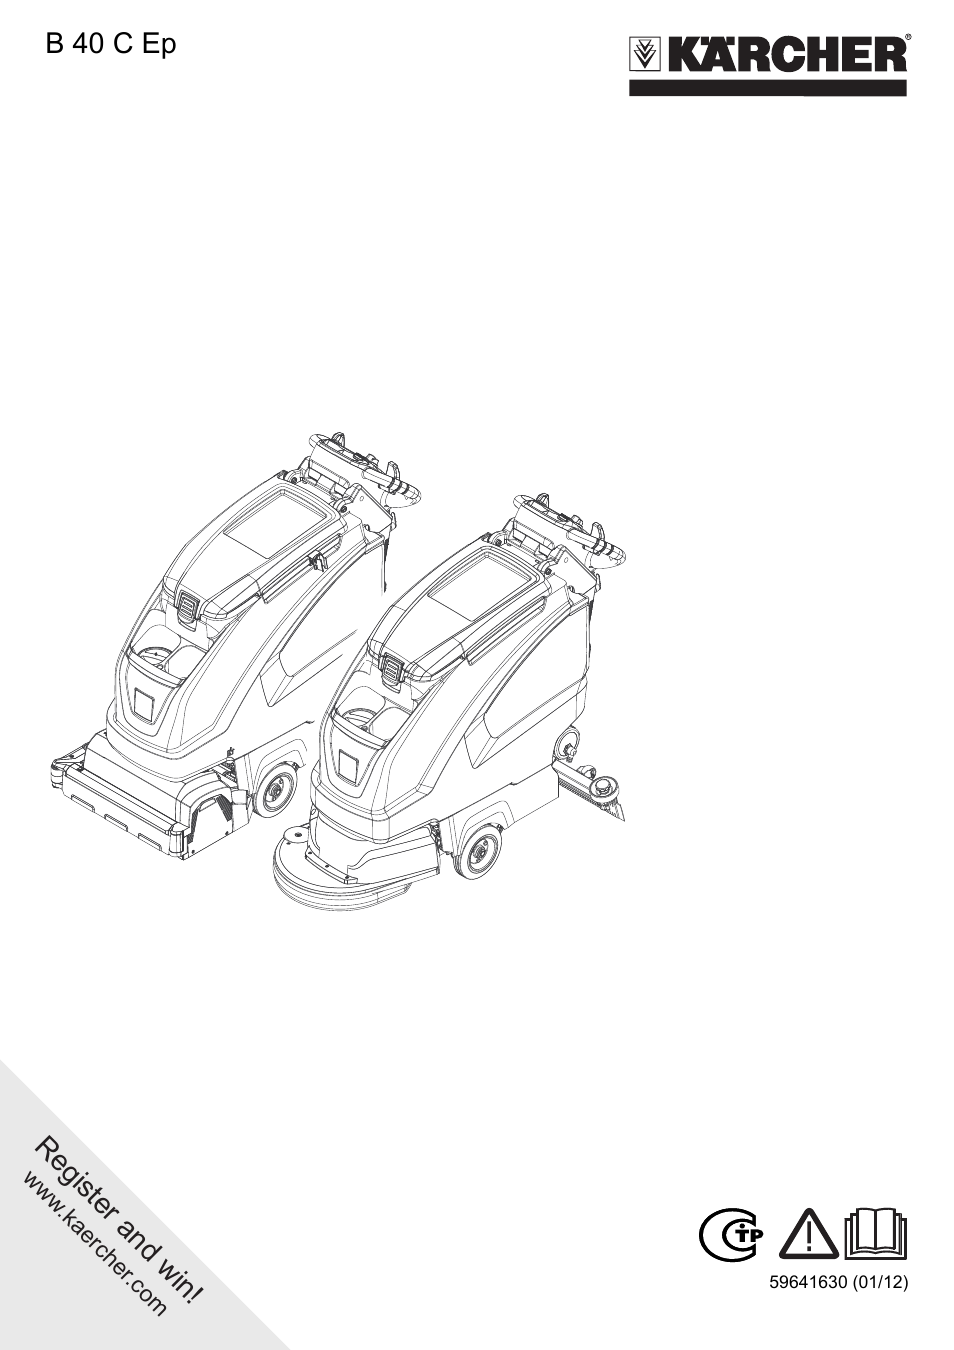 Karcher Autolaveuse B 40 C-W version rouleaux Manuel d'utilisation | Pages: 12